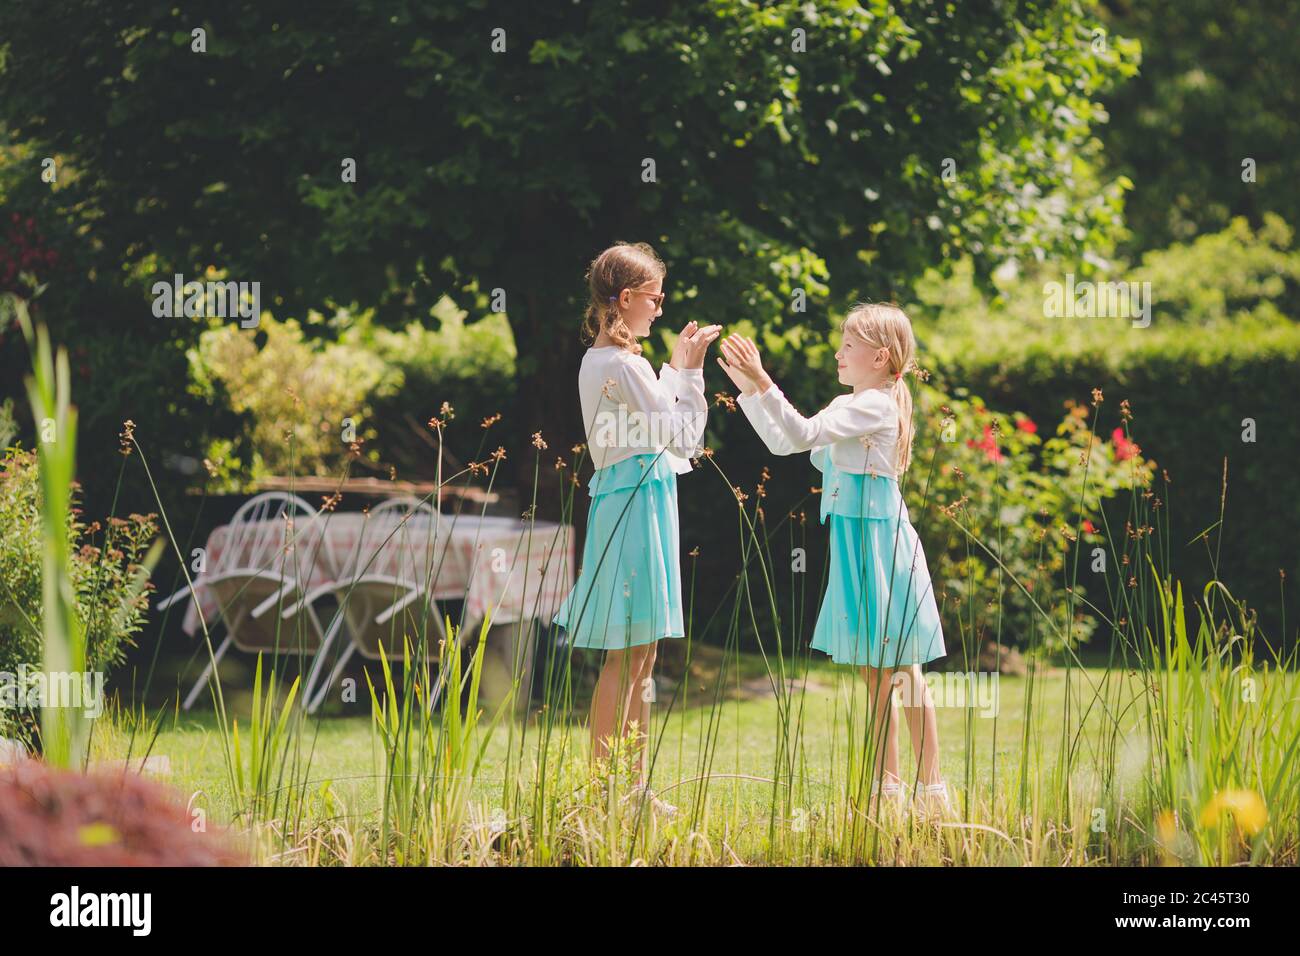 Zwei junge kaukasische Mädchen spielen Hand klatschen Spiele im grünen Garten Stockfoto